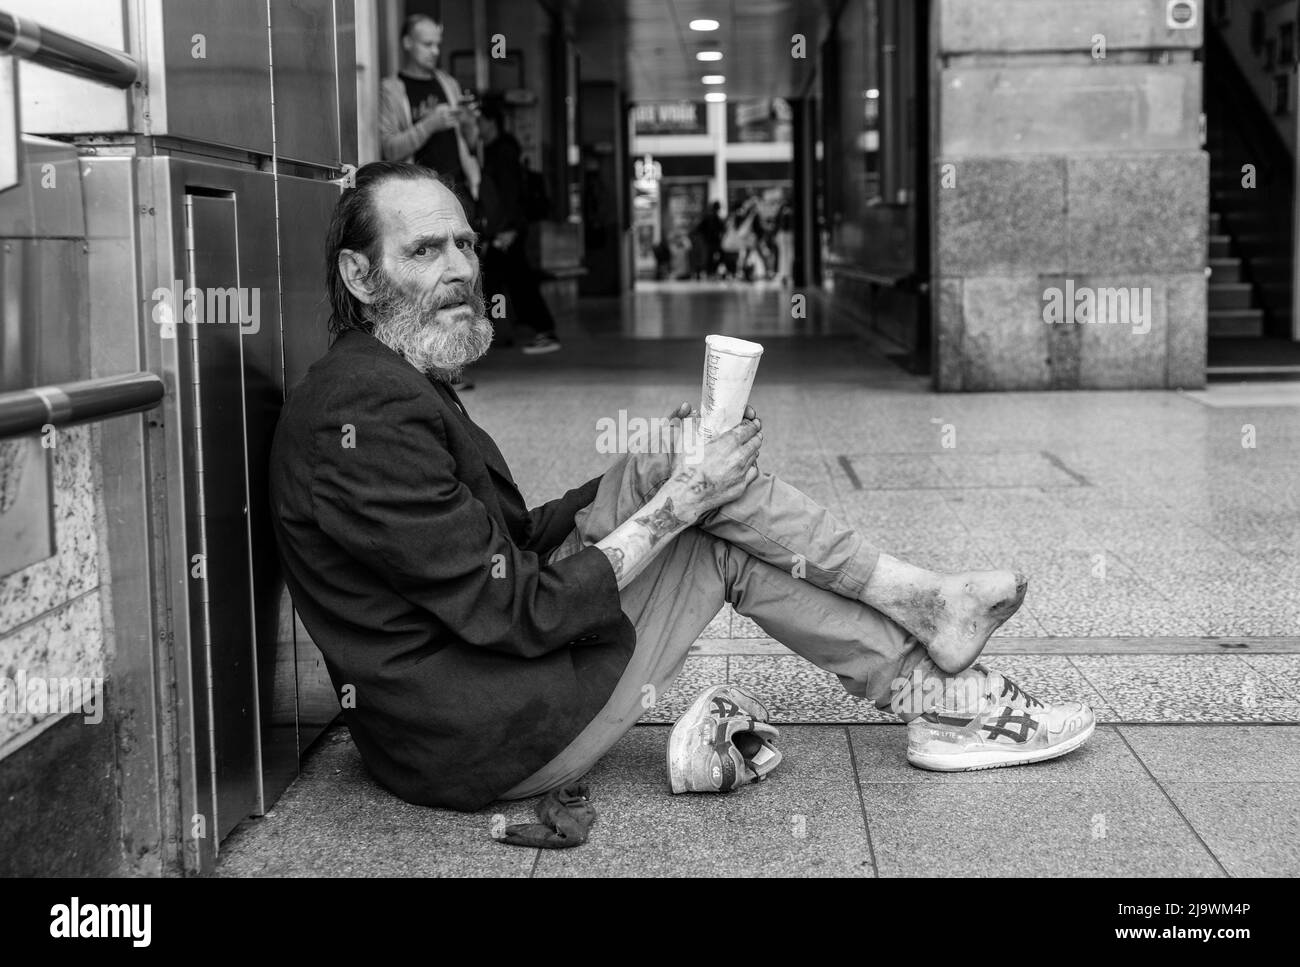 Vor der Victoria Station, London, Großbritannien, saß ein obdachloser Mann mit infiziertem Fuß und bettelte um Geld Stockfoto